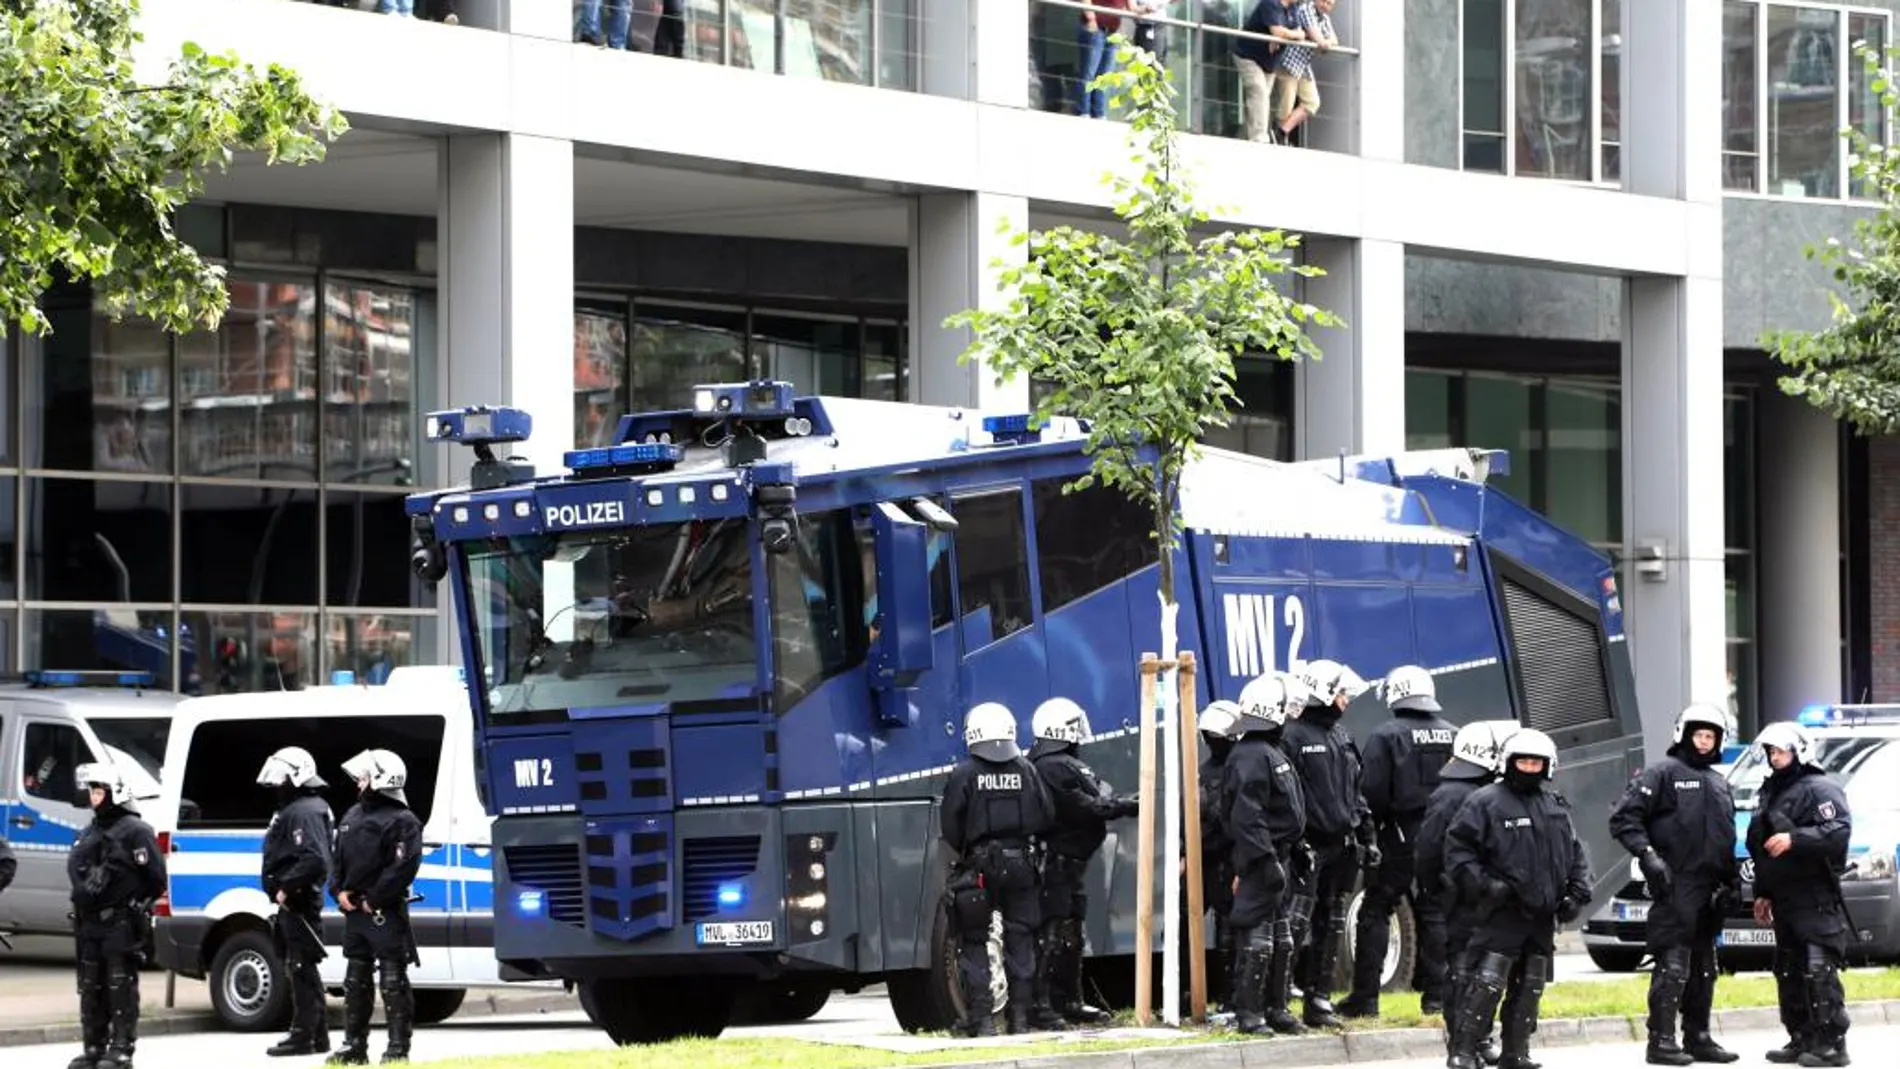 Efectivos de la policía acordonan una zona de protestas contra la cumbre del G20 celebrada en Hamburgo (Alemania) el pasado 7 de julio del 2017